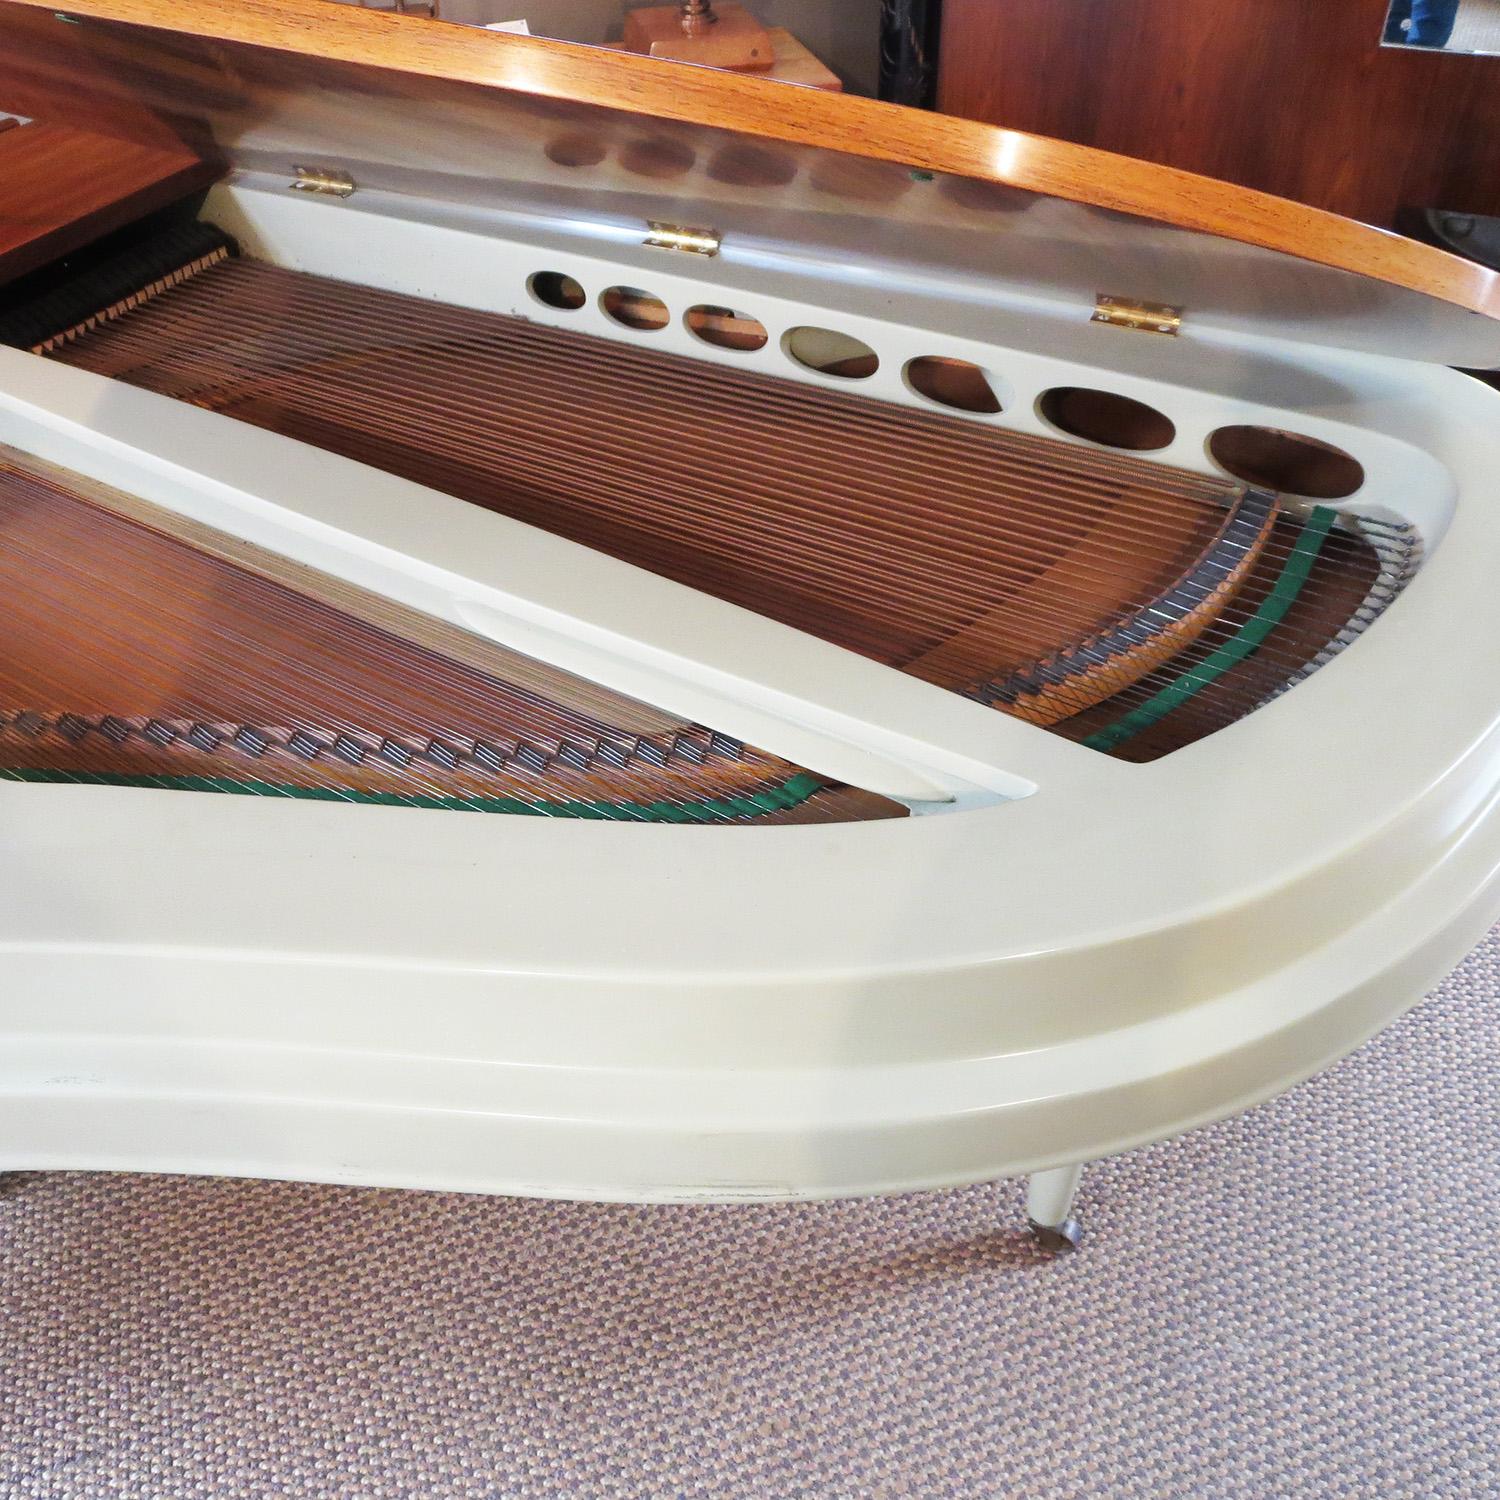 Painted Rippen Aluminum Grand Piano - Midcentury Design